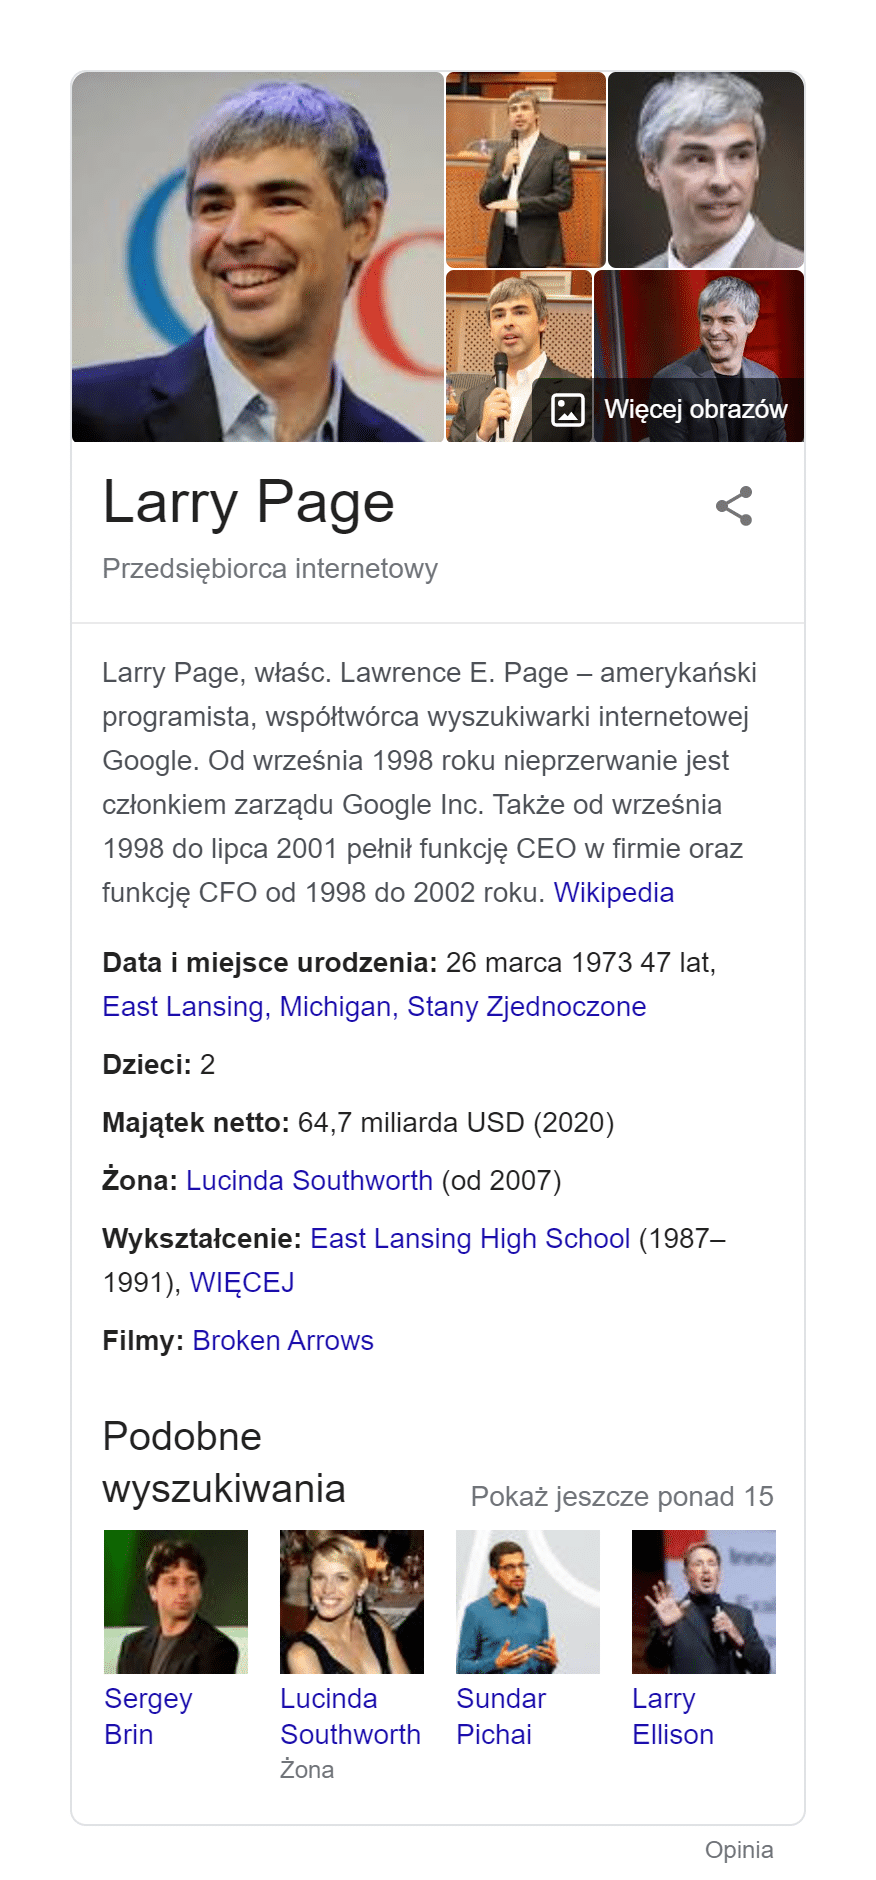 panel wiedzy o Larrym Page'u